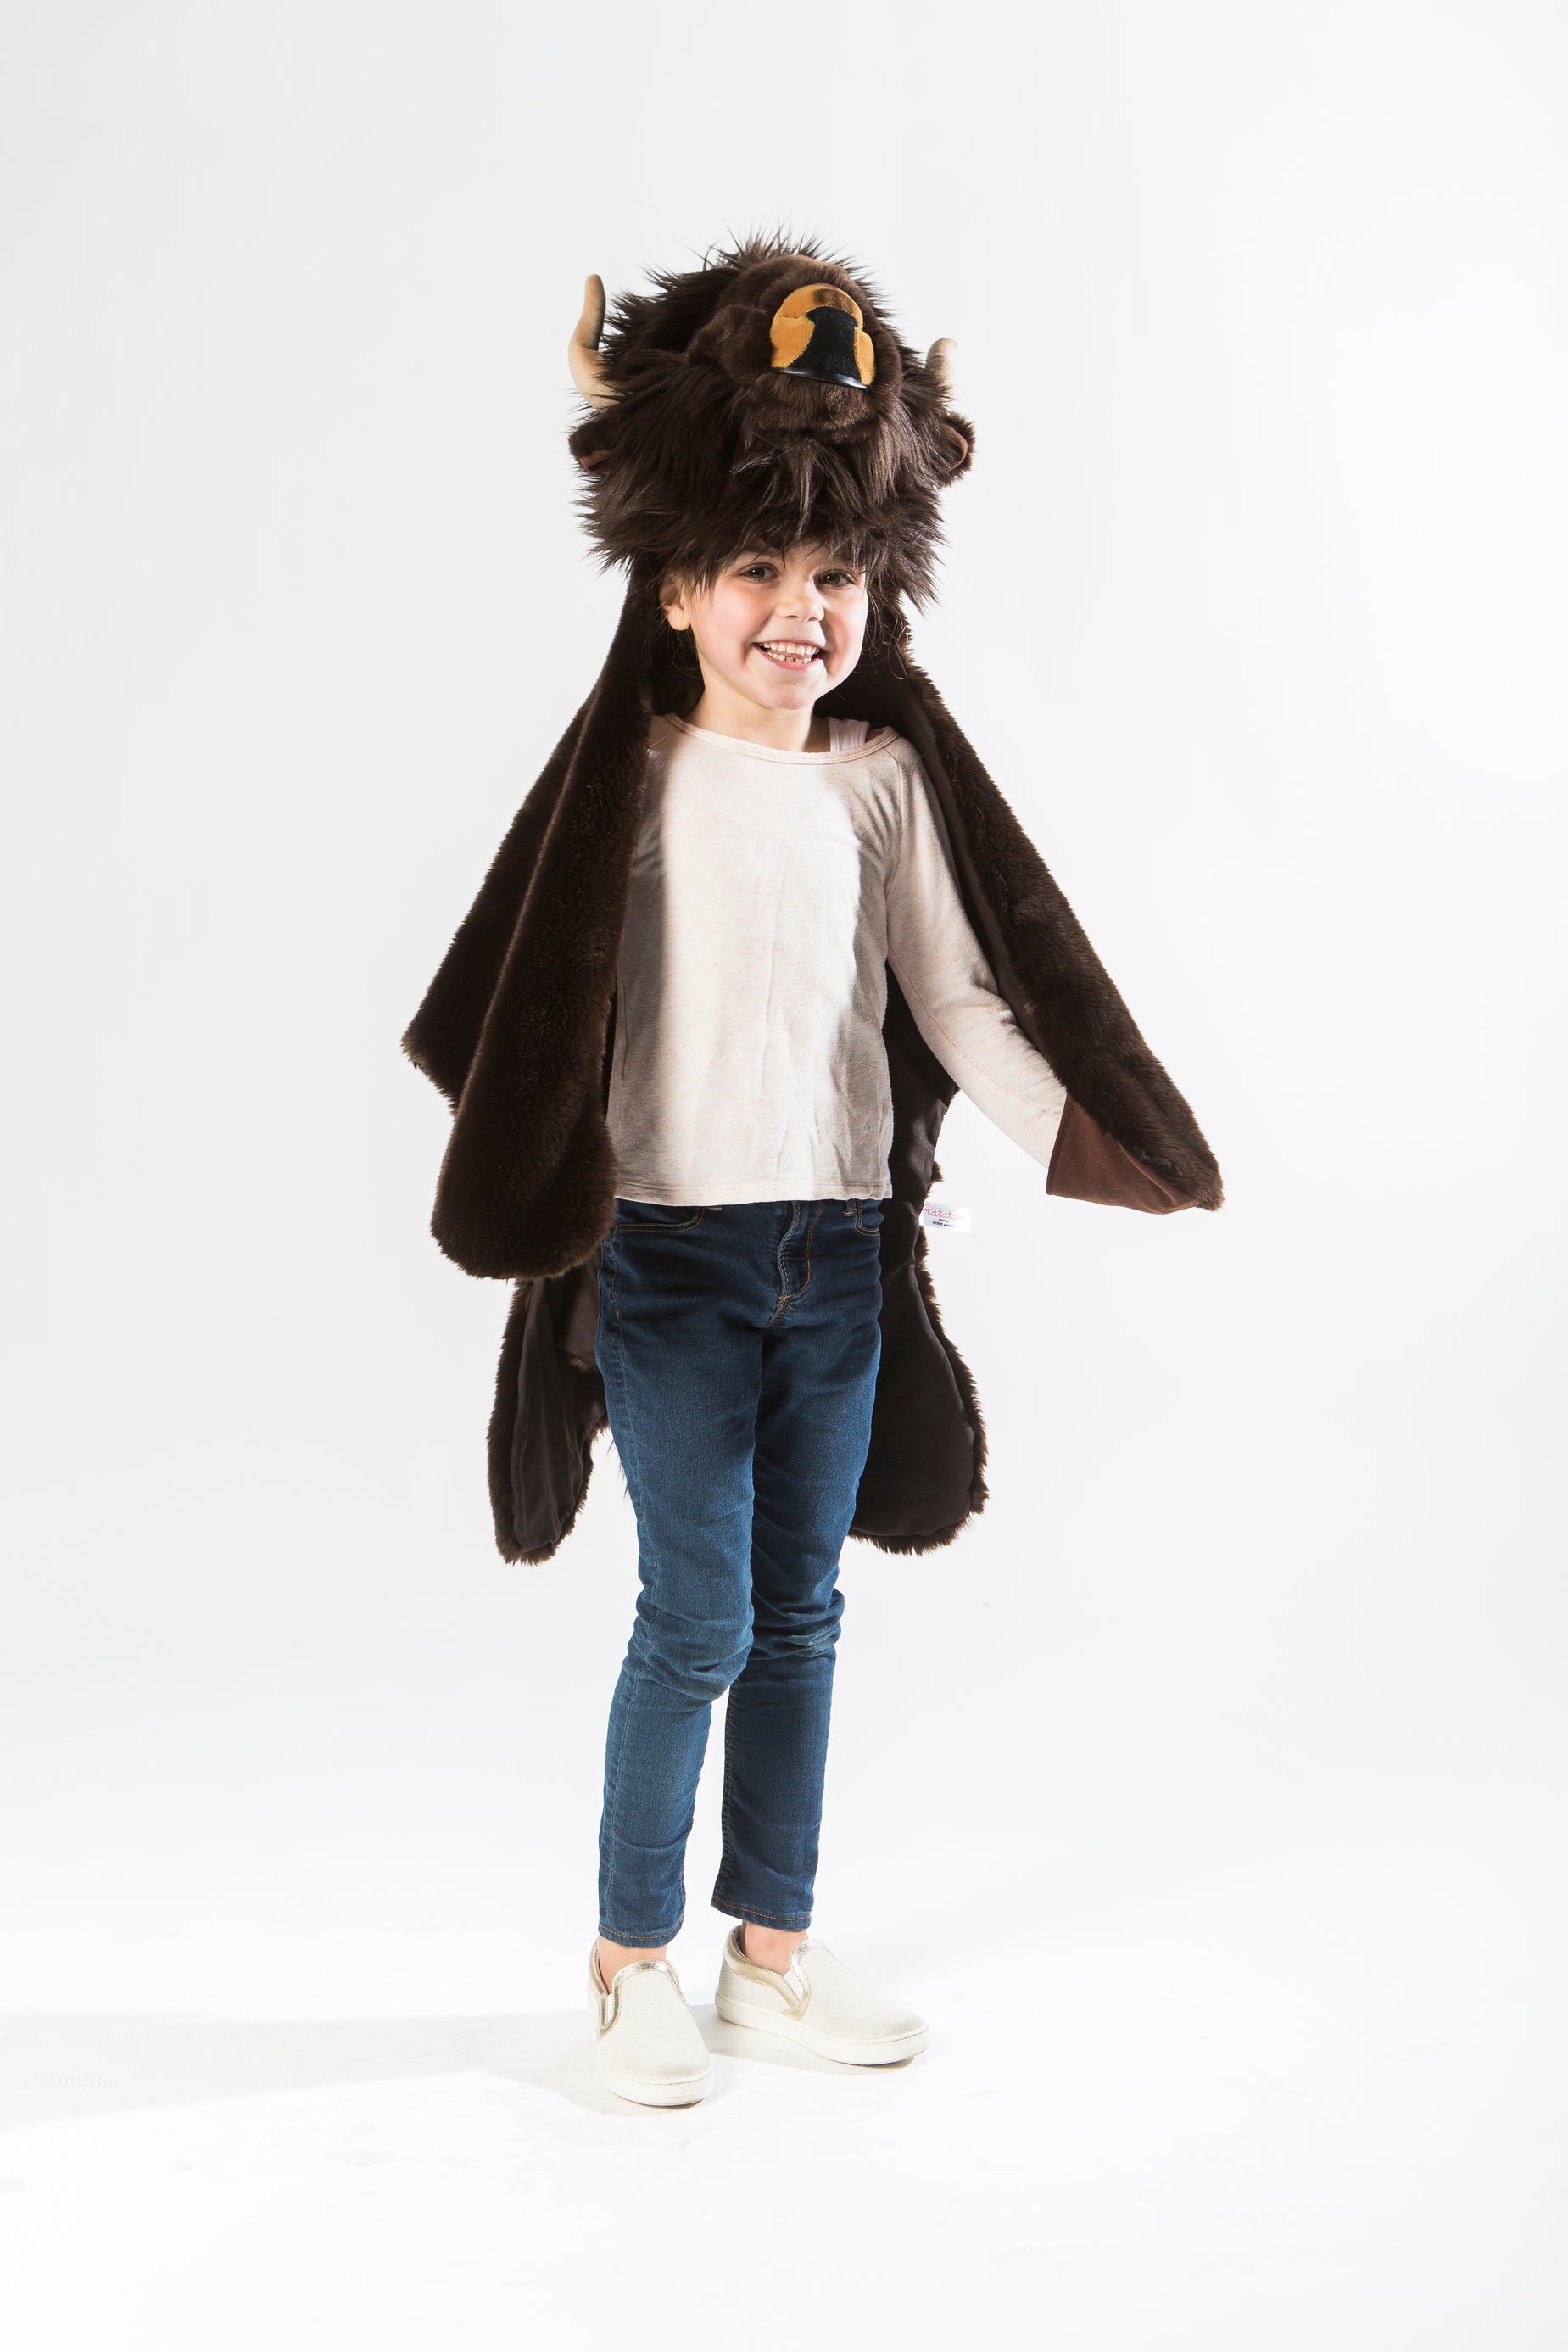 WILD&SOFT Königliches Wild & Soft Buffalo Kostüm für kleine Abenteurer ♥️